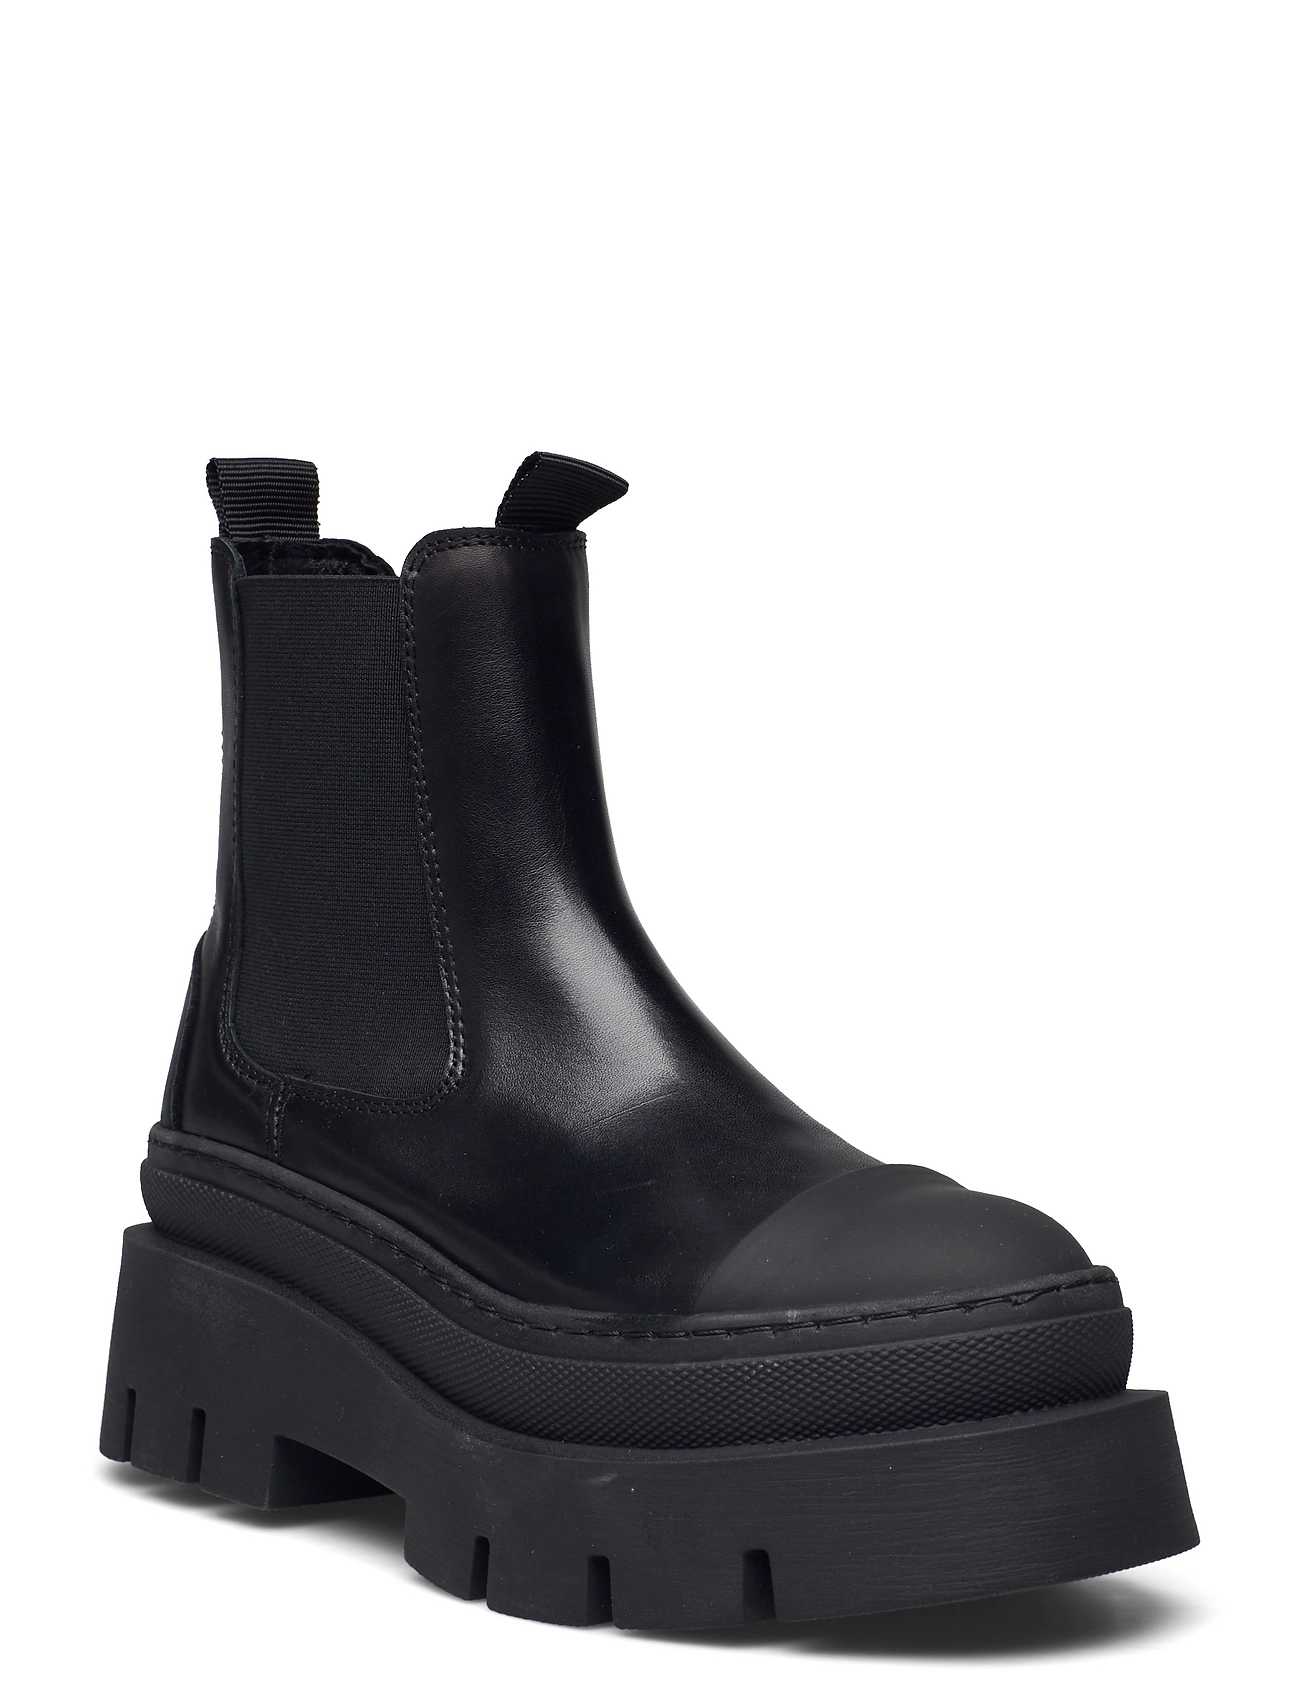 Nessa Shoes Chelsea Boots Black Pavement